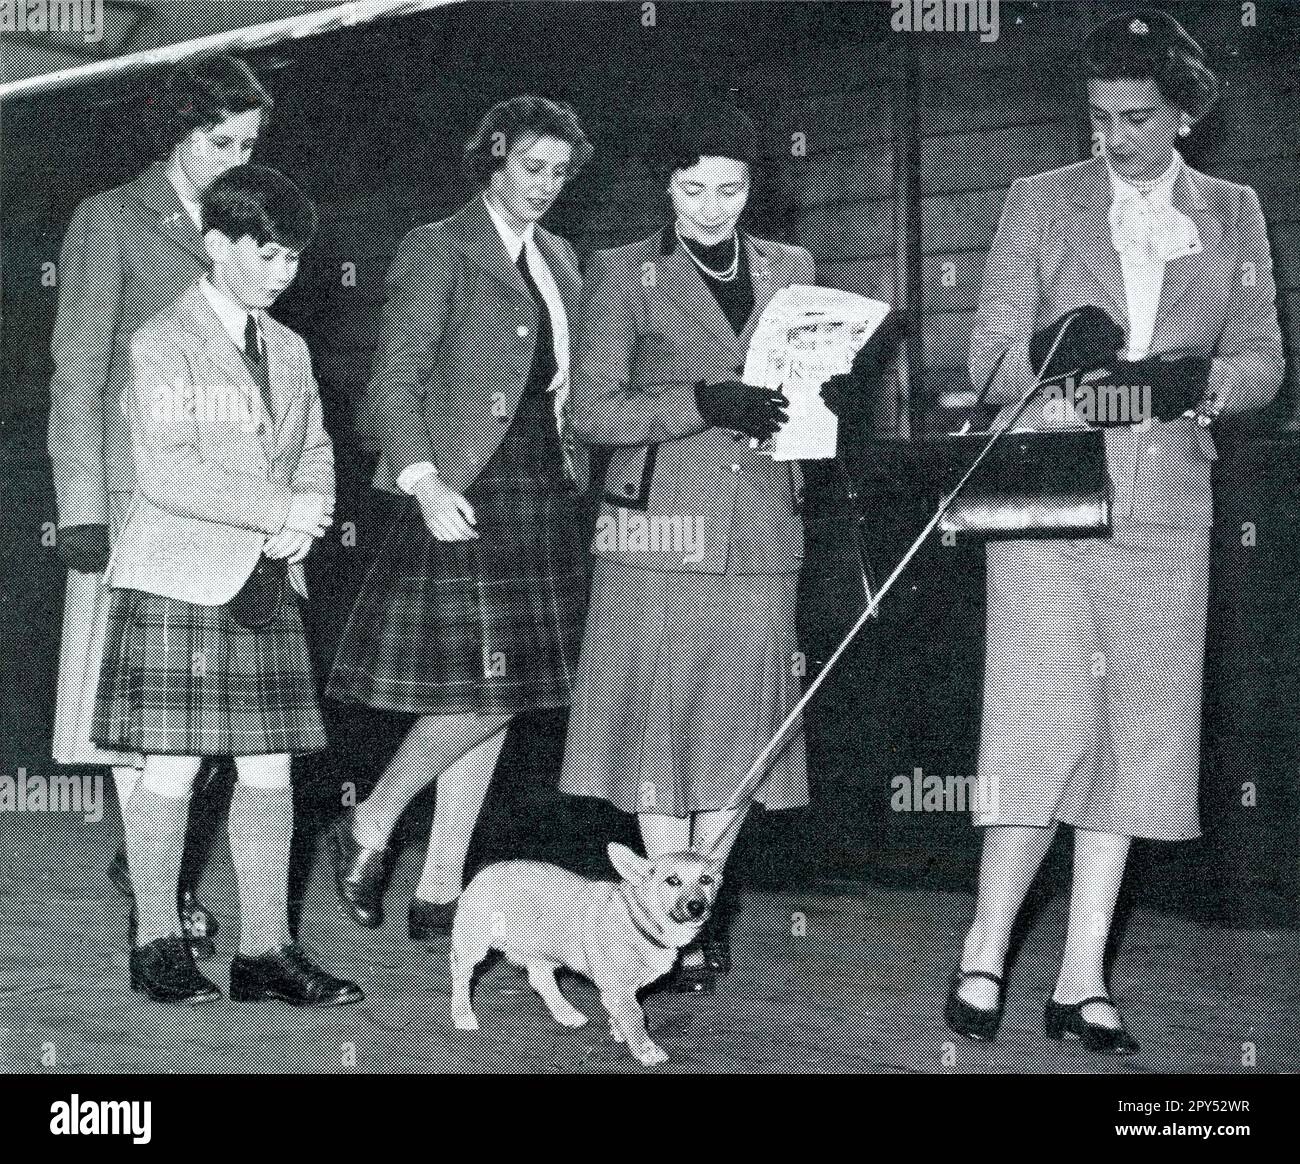 Pressefoto der Herzogin von Kent mit ihrem Corgi-Hund an der Aberdeen Joint Station, die am 5. September 1951 in Deeside Urlaub machen wird. Sie wird von ihren Kindern begleitet, Prinz Michael von Kent und Prinzessin Alexandra von Kent, die beide einen Kilt tragen. Schottland, Großbritannien Stockfoto